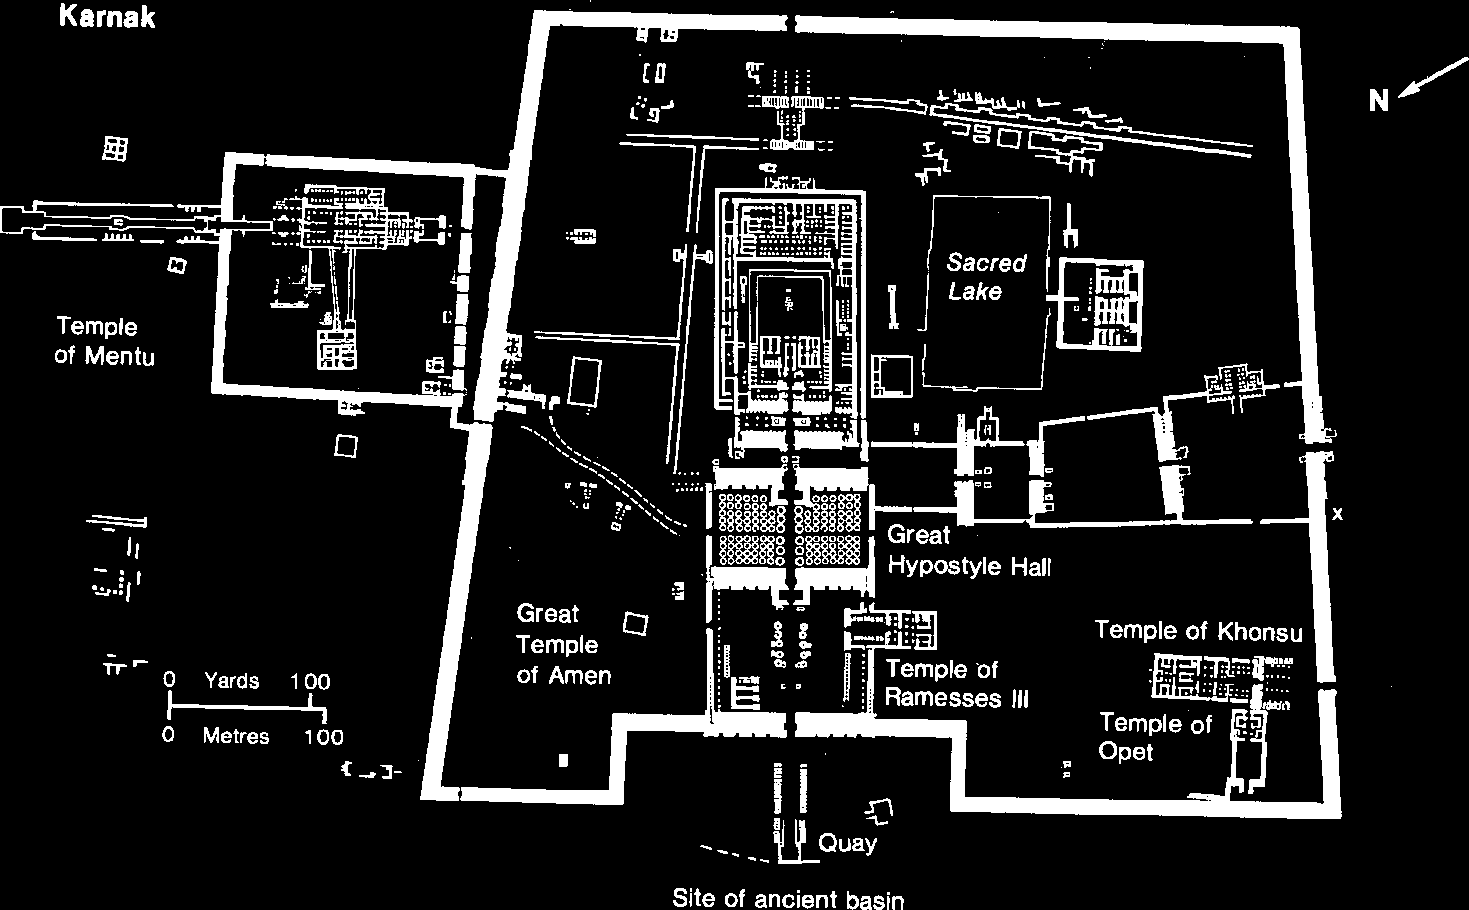 Wielka Świątynia Amona w Karnaku Zespół Szkół Plastycznych w Gdyni W Karnaku znajduje się zespół świątyń wzniesionych w różnym czasie, poświęconych bogom tebańskim.